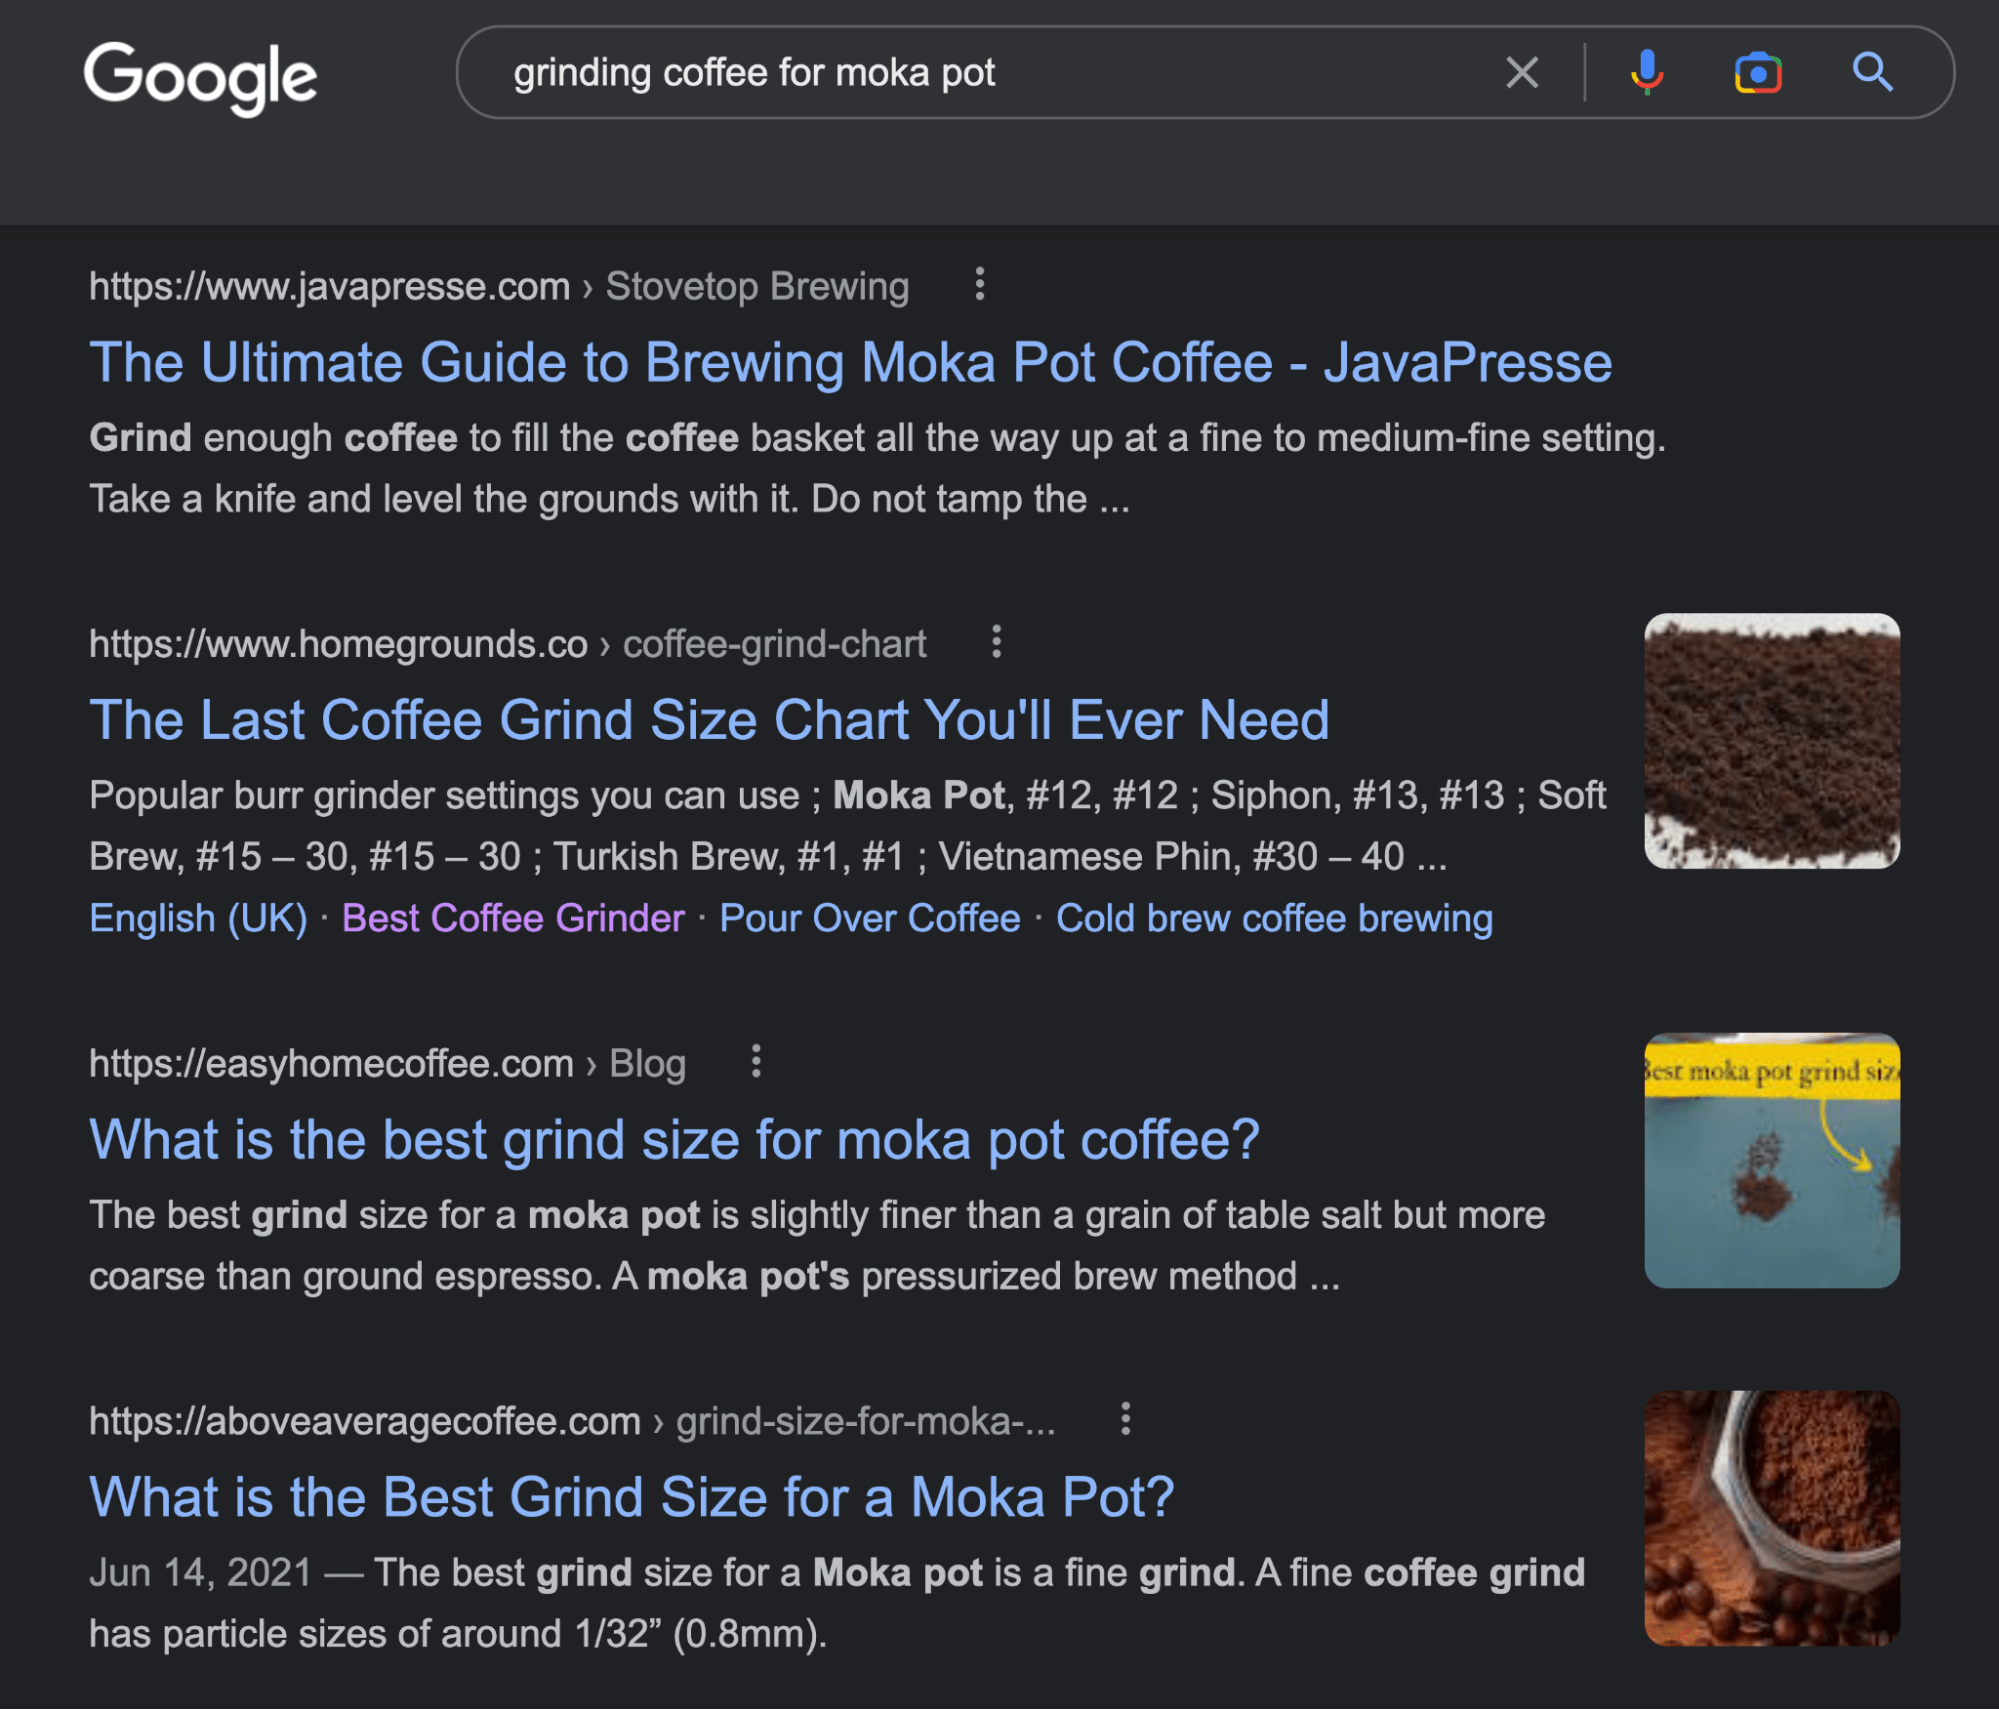 谷歌的 SERP 为 "磨咖啡的摩卡壶" 搜索查询